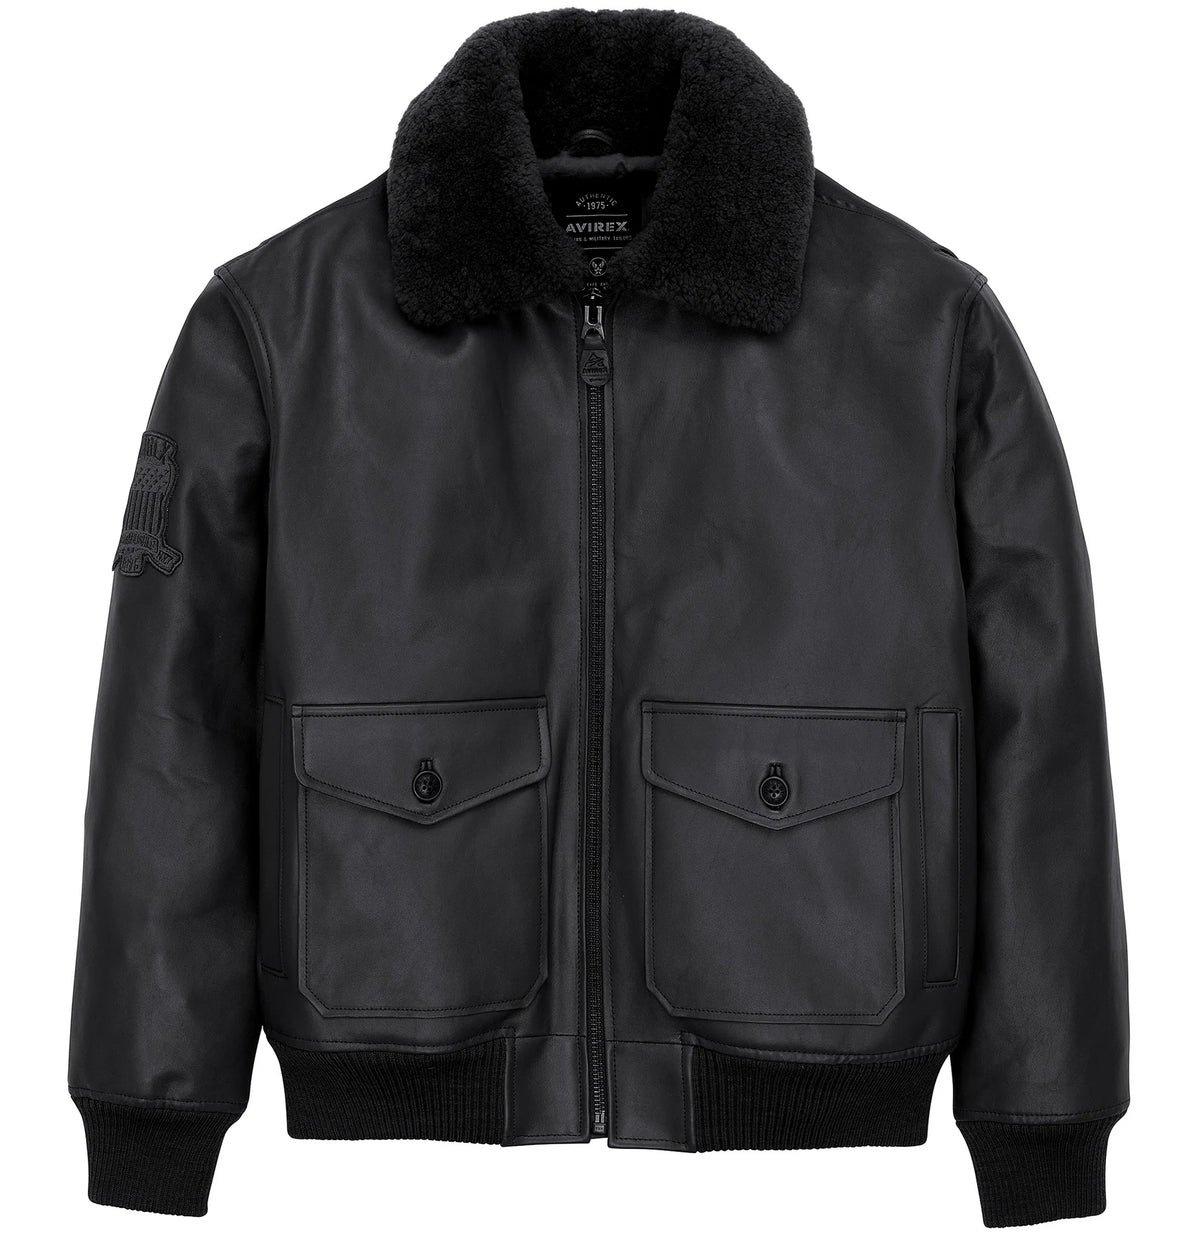 avirex-g-1-leather-bomber-jacket-front